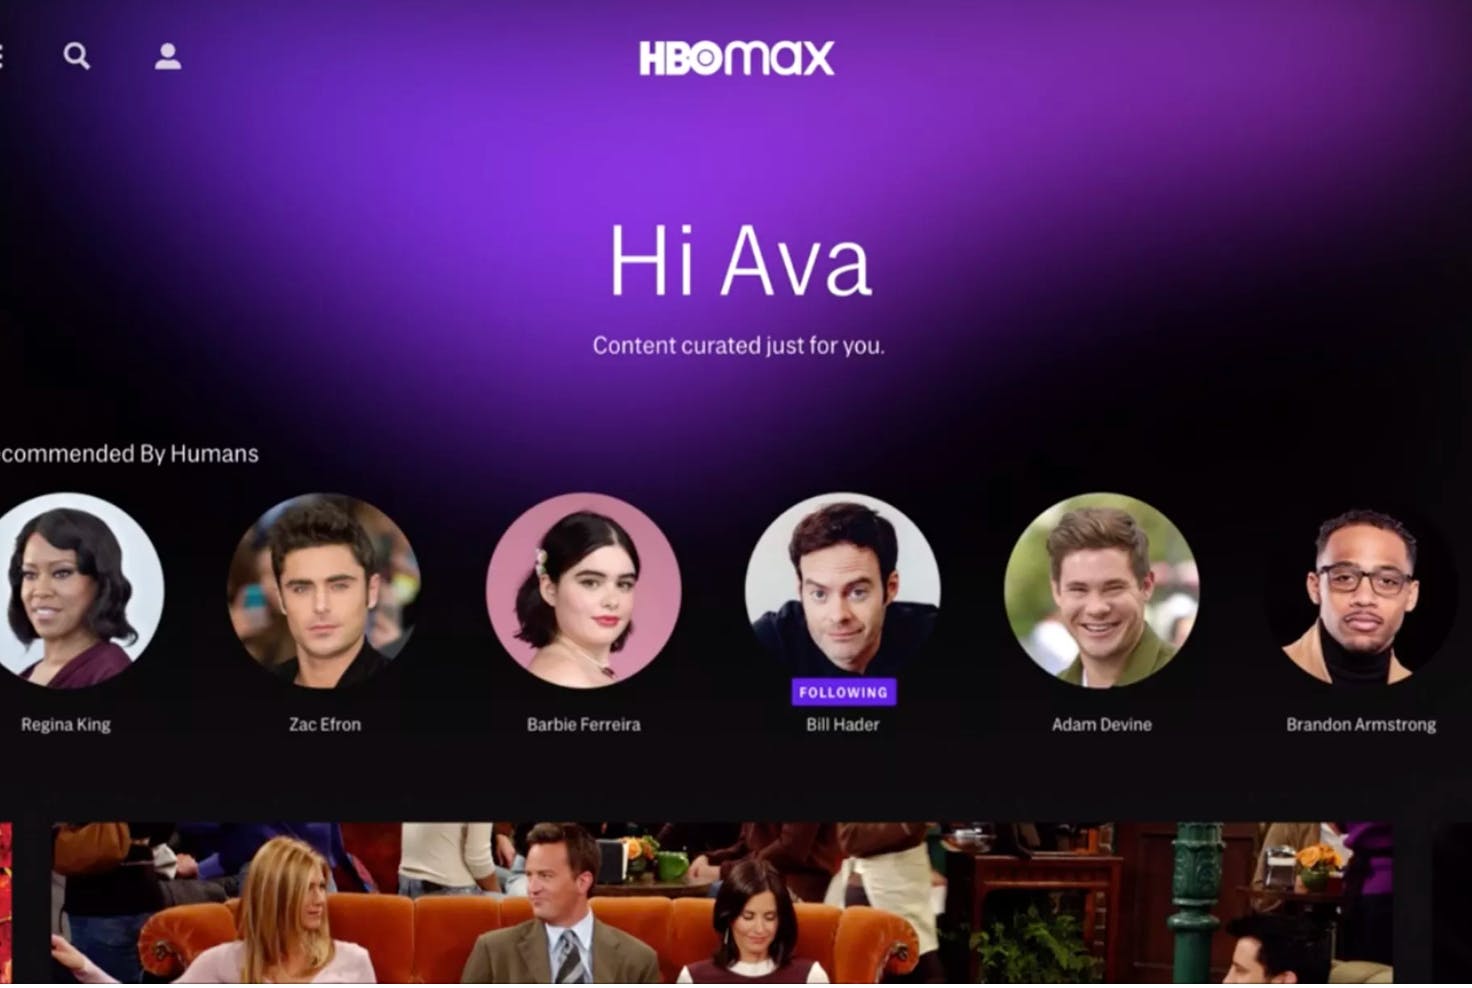 HBOmax profile screen